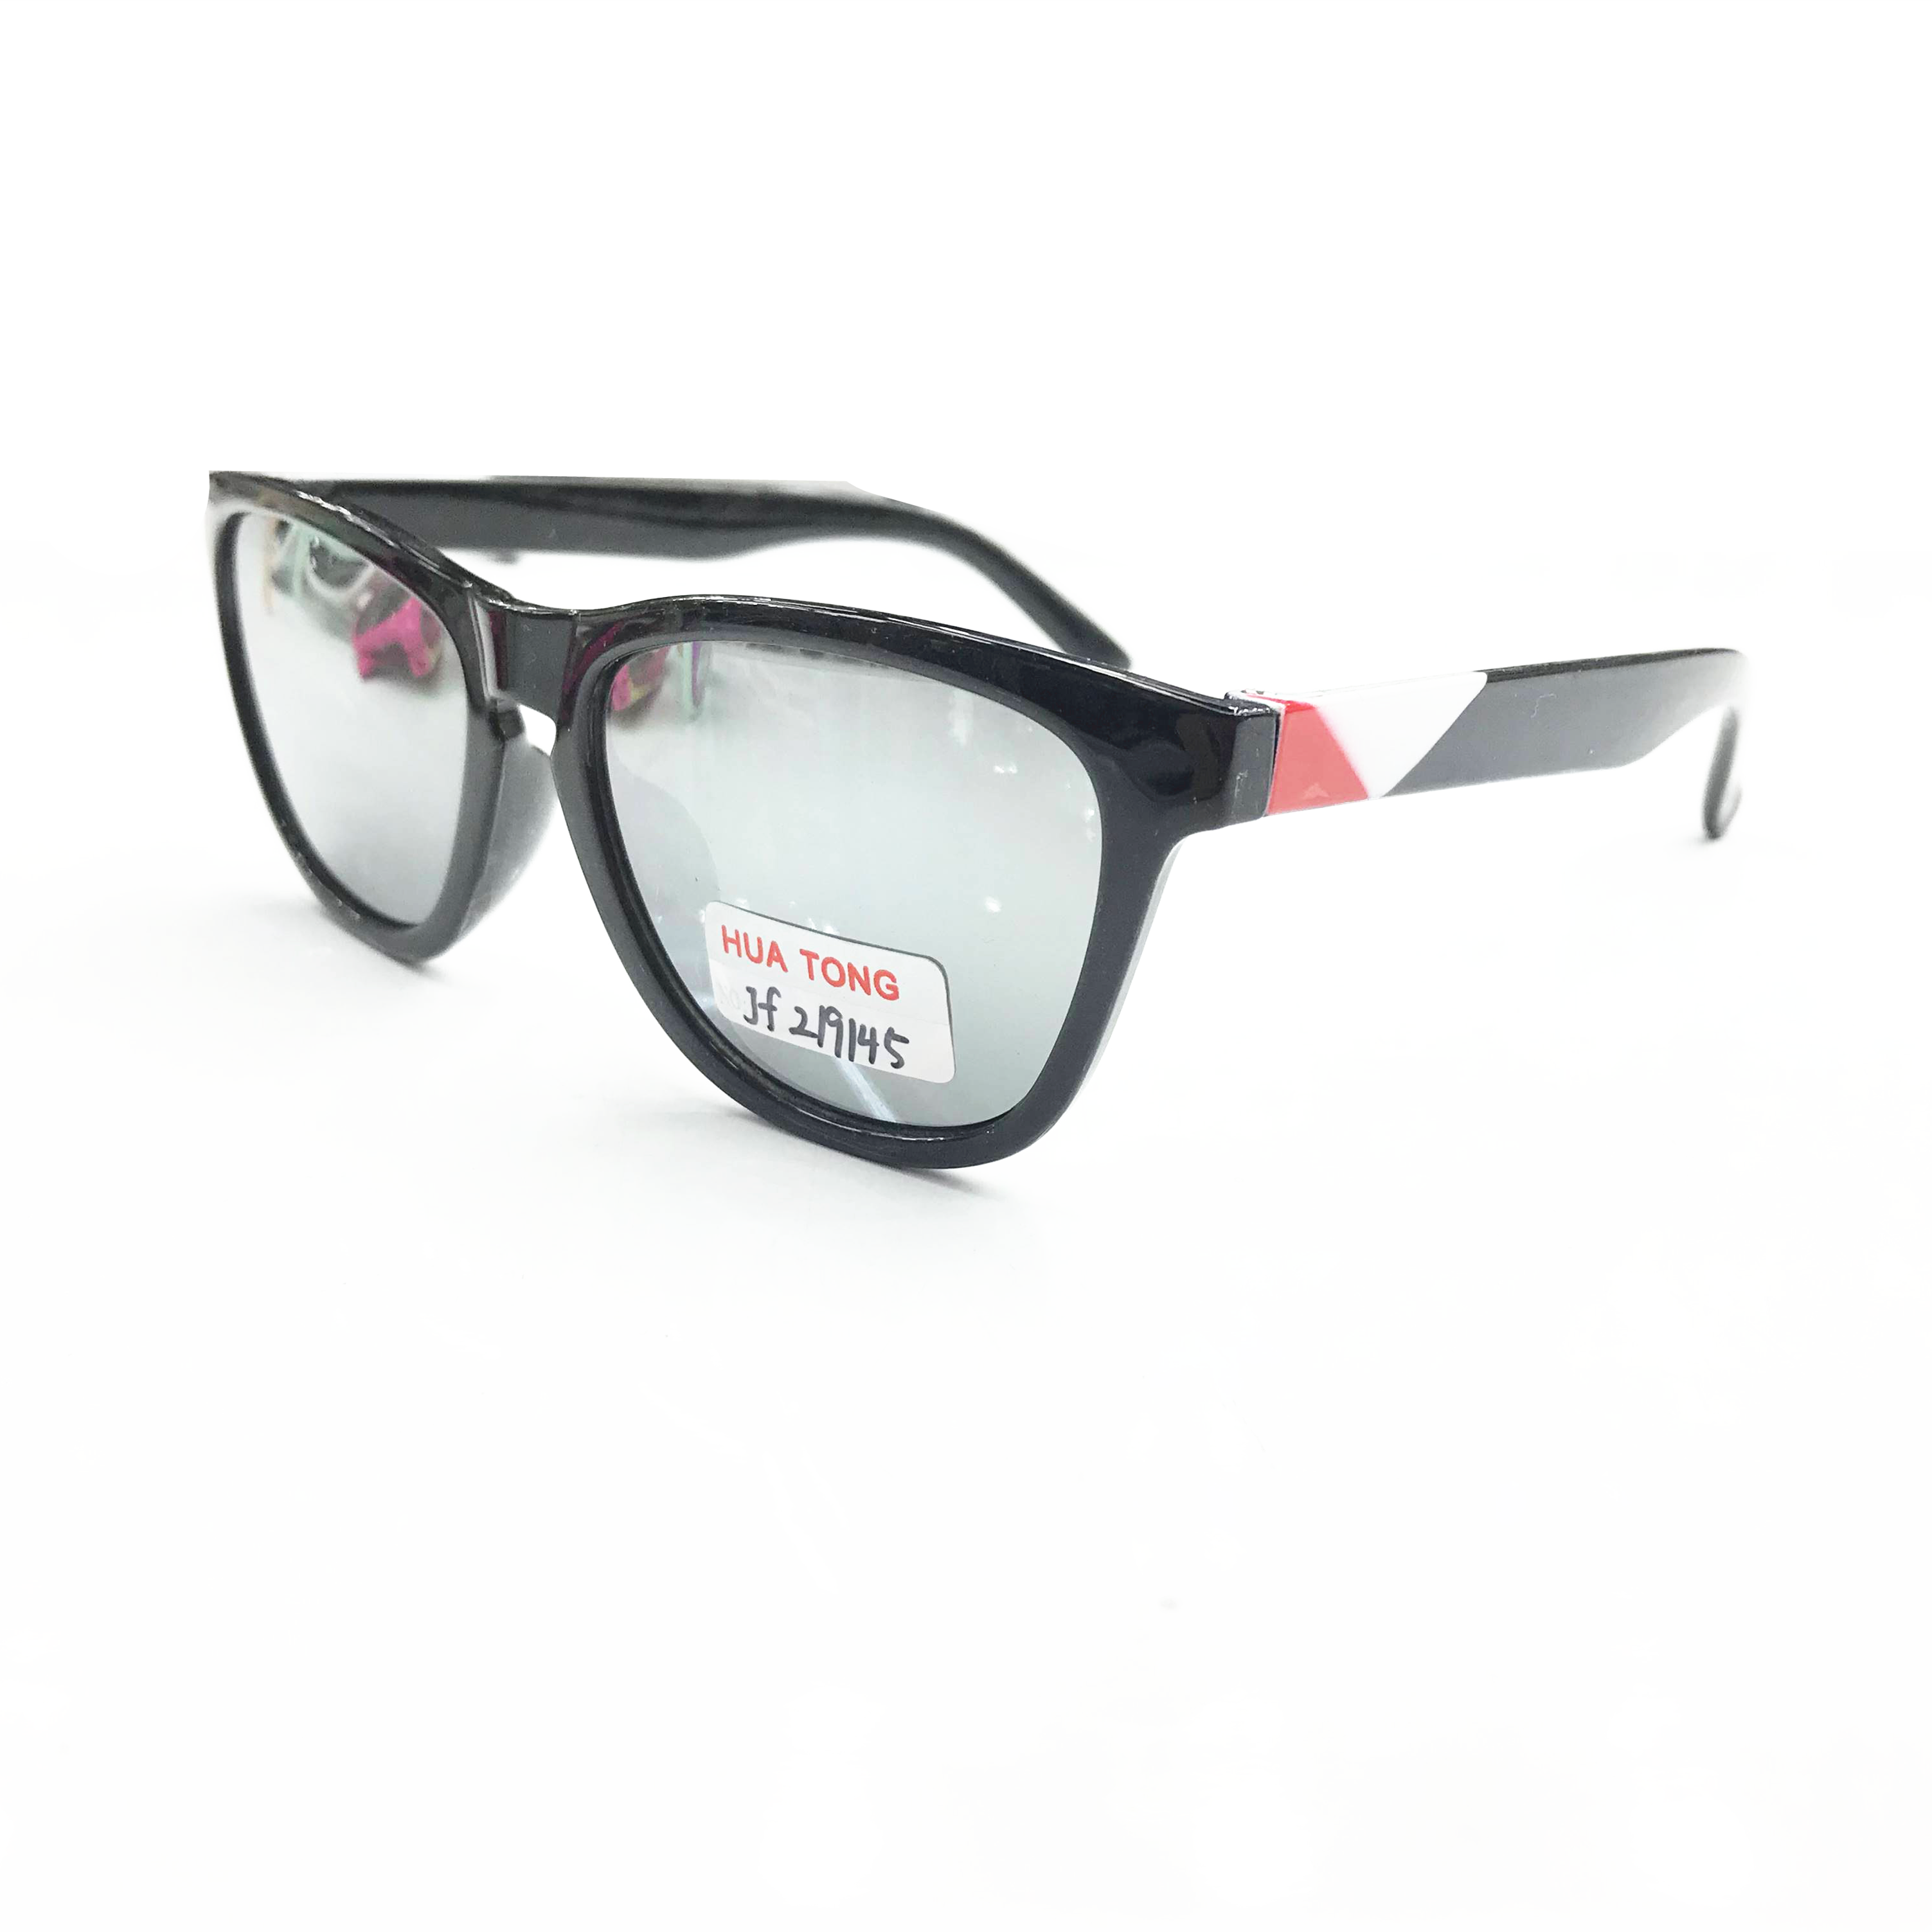 2020最新款儿童时尚太阳镜防紫外线眼镜UV400镀膜产品图